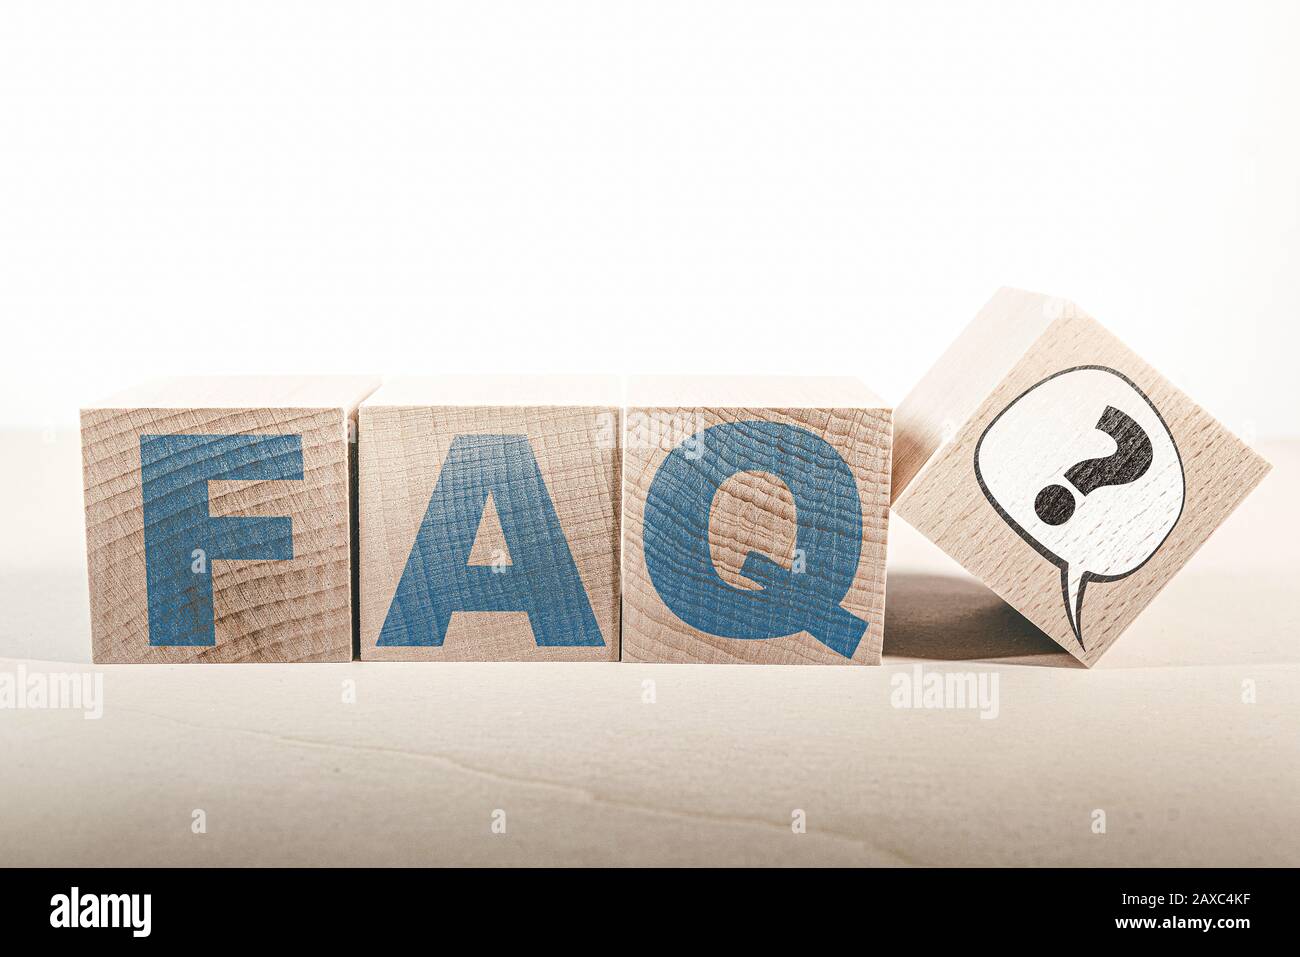 Häufig gestellte Fragen Konzept, FAQ und Sprechblase mit Fragezeichen auf Holzblöcken Stockfoto